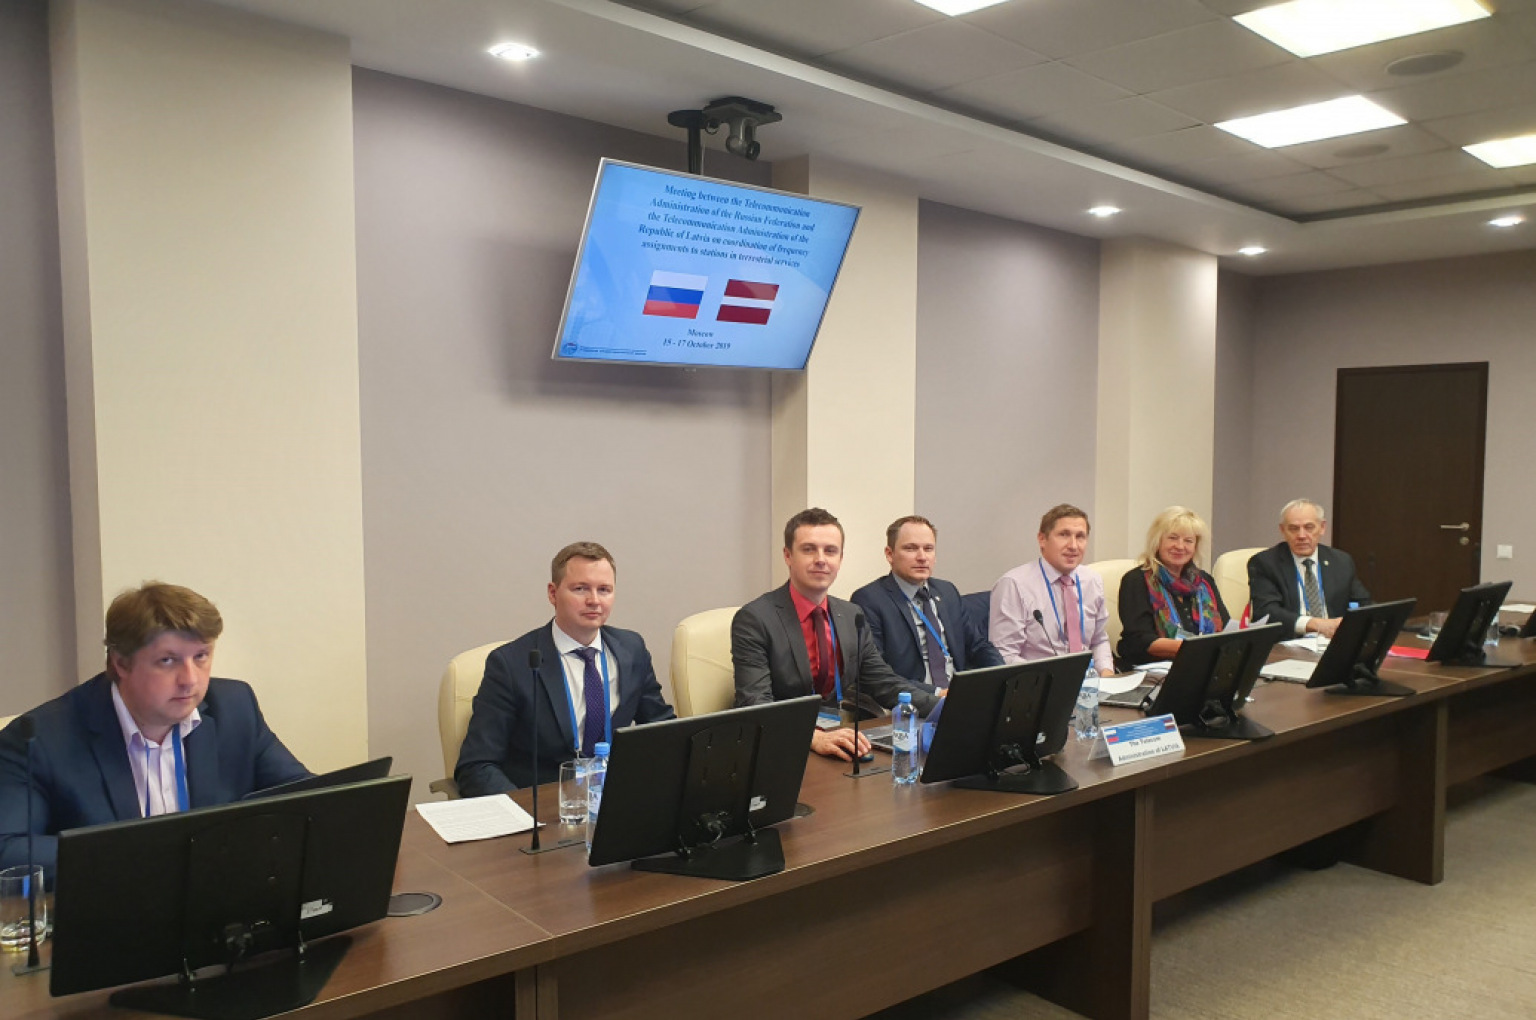 2019. gada 15. līdz 17. oktobrī Maskavā norisinājās Latvijas un Krievijas starpvalstu sakaru administrāciju sarunas par radiofrekvenču koordināciju pierobežā.  Latviju pārstāvēja VAS “Elektroniskie sakari” un Latvijas Republikas Satiksmes ministrijas Sakaru departamenta pārstāvji.